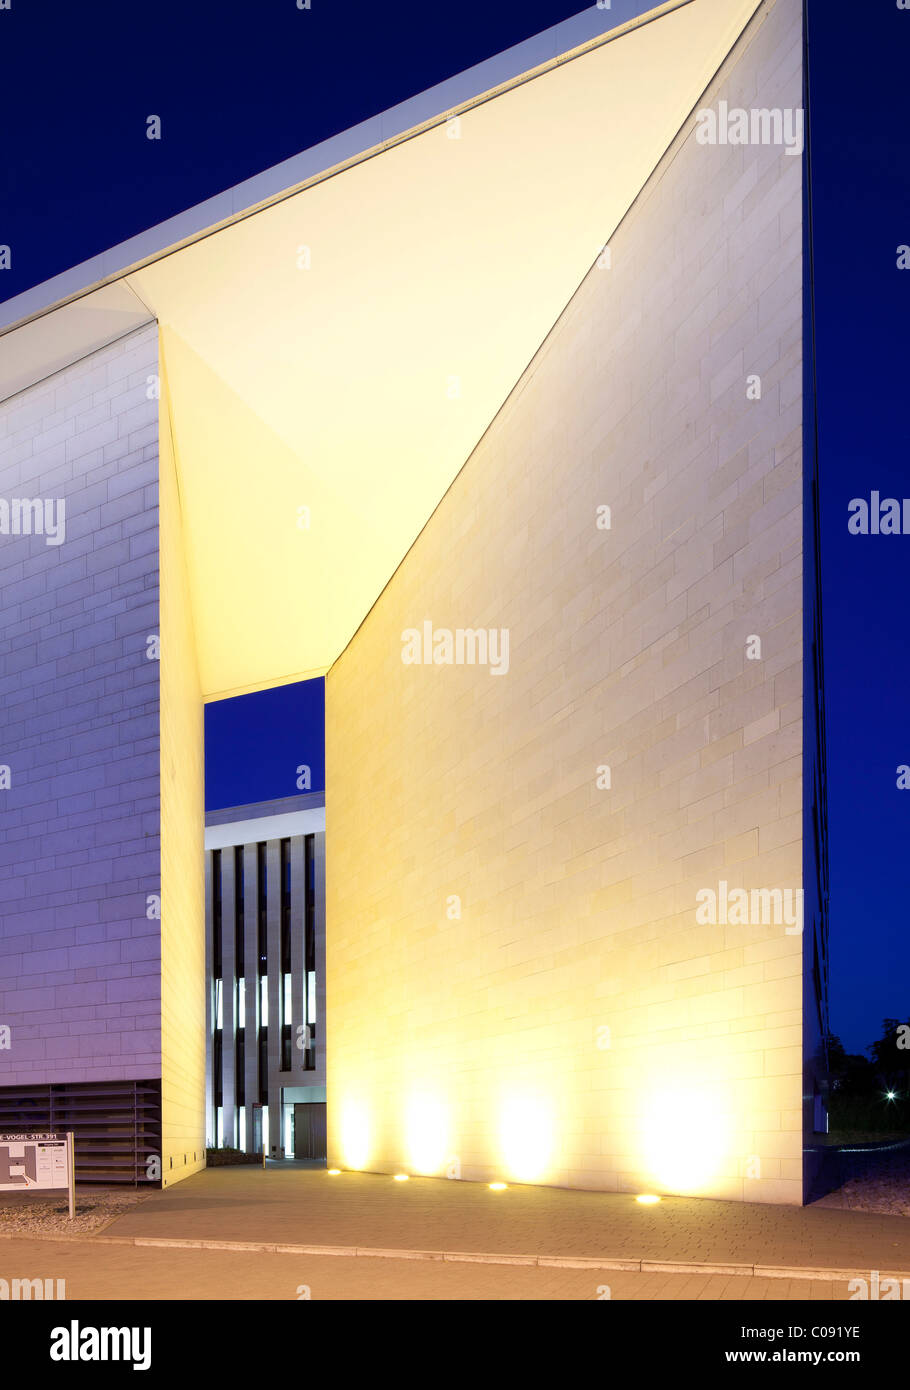 ADAC-house, immeuble de bureau, affaires Stadtkrone Os dans lequel se trouvent, Dortmund, Ruhr, Nordrhein-Westfalen, Germany, Europe Banque D'Images